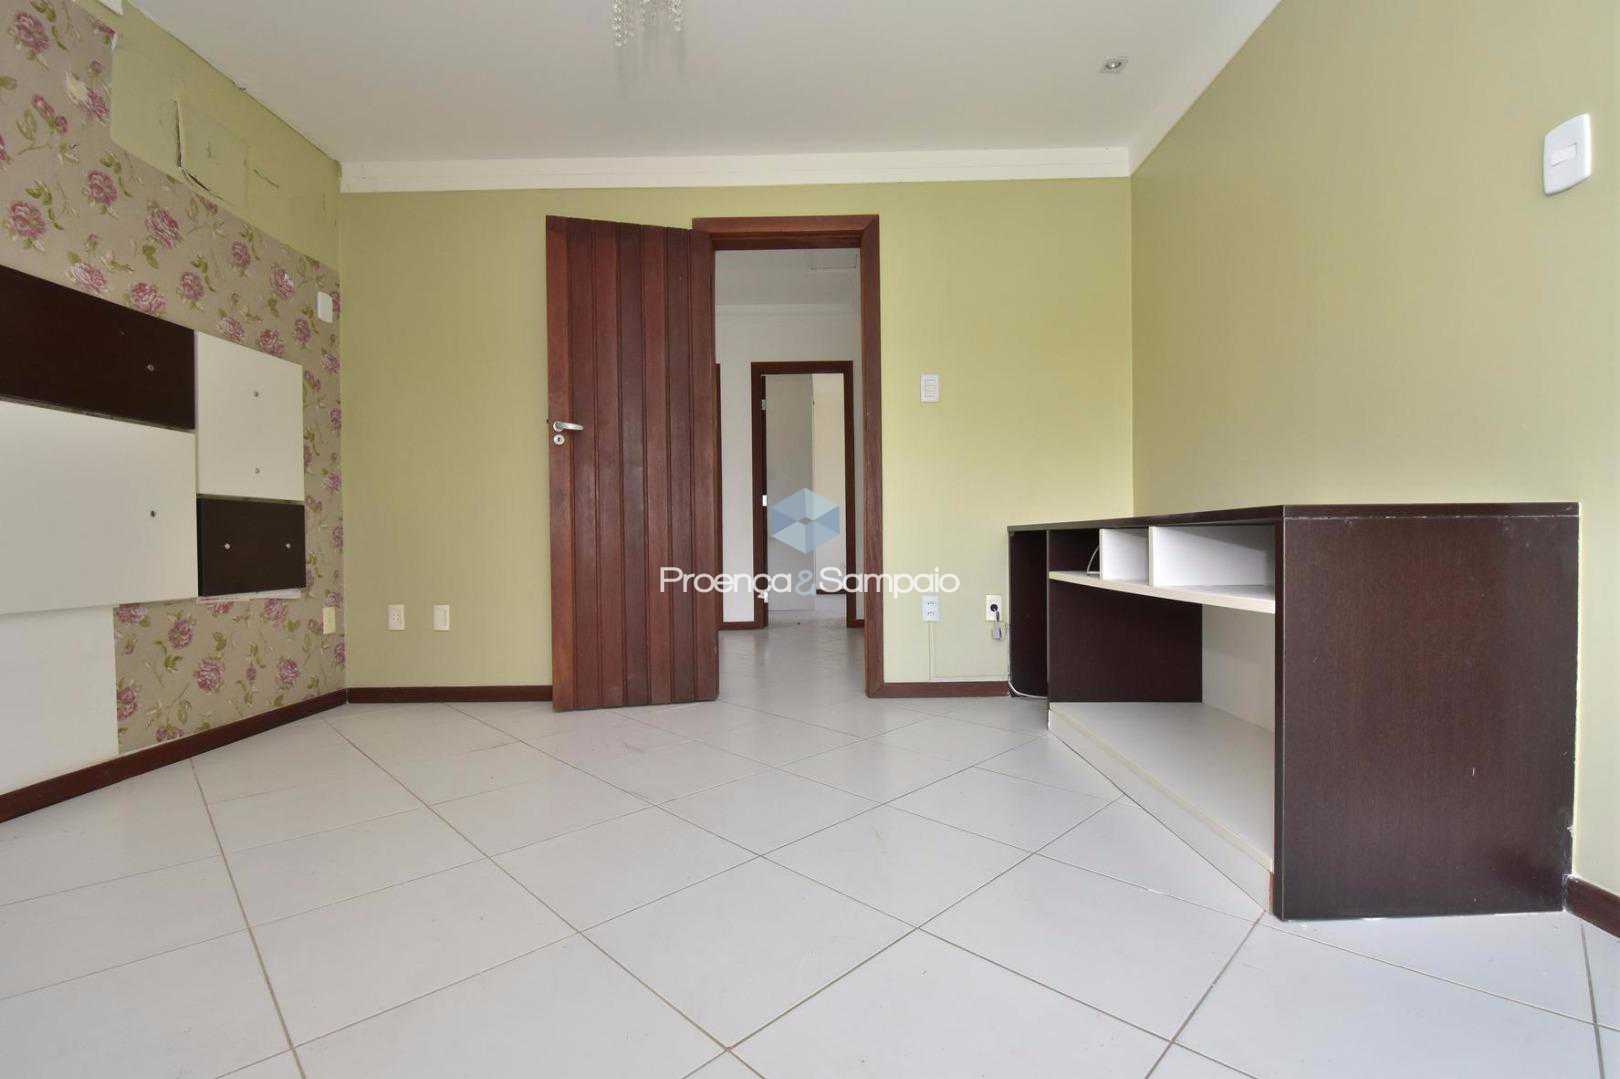 FOTO17 - Casa em Condomínio 4 quartos à venda Lauro de Freitas,BA - R$ 680.000 - PSCN40012 - 19